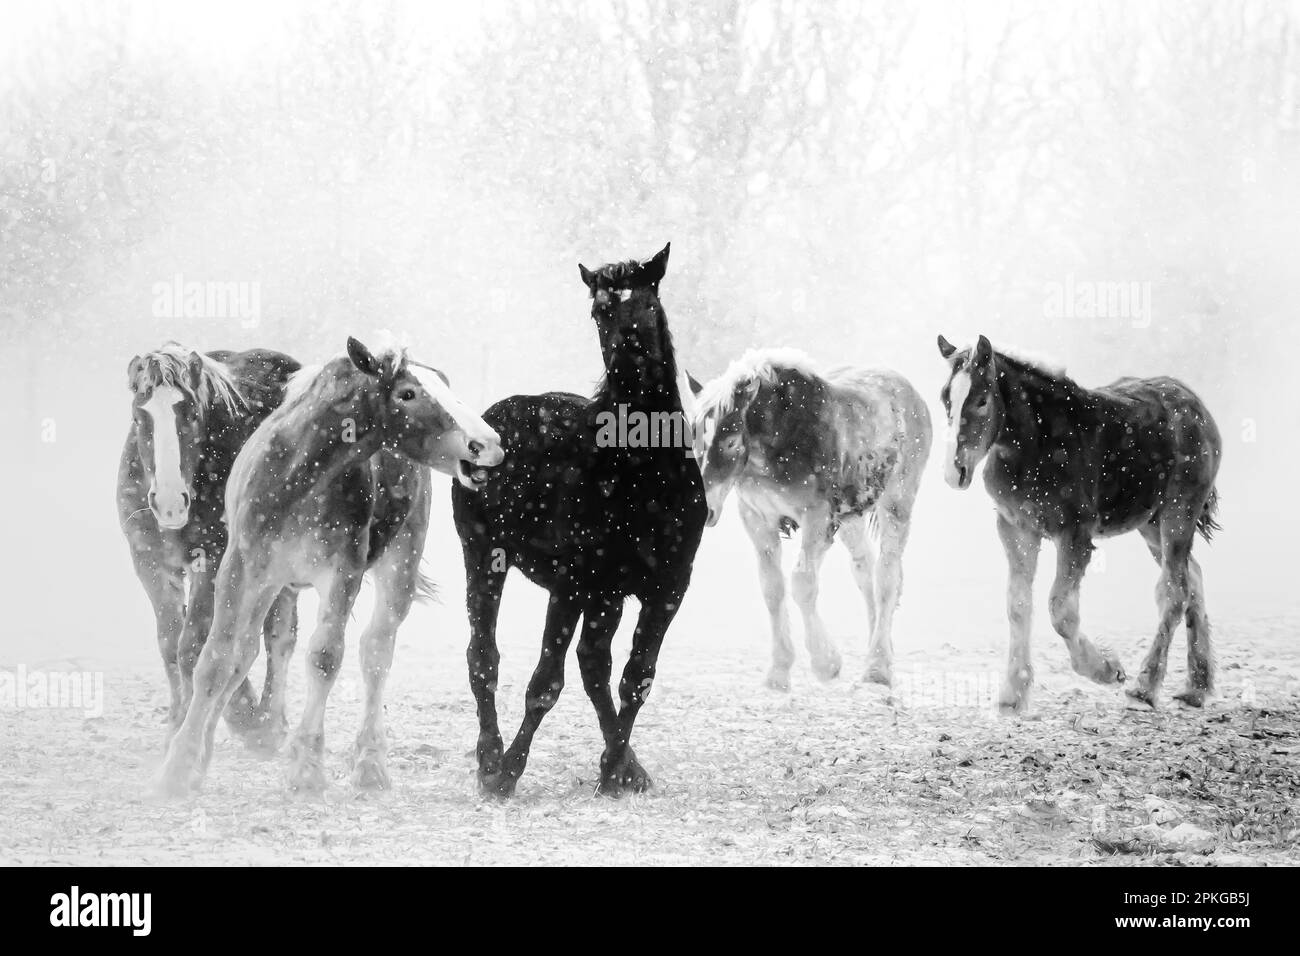 Les Amish travaillent des chevaux qui tournent autour d'un pâturage dans la neige qui souffle dans le centre du Michigan, aux États-Unis Banque D'Images